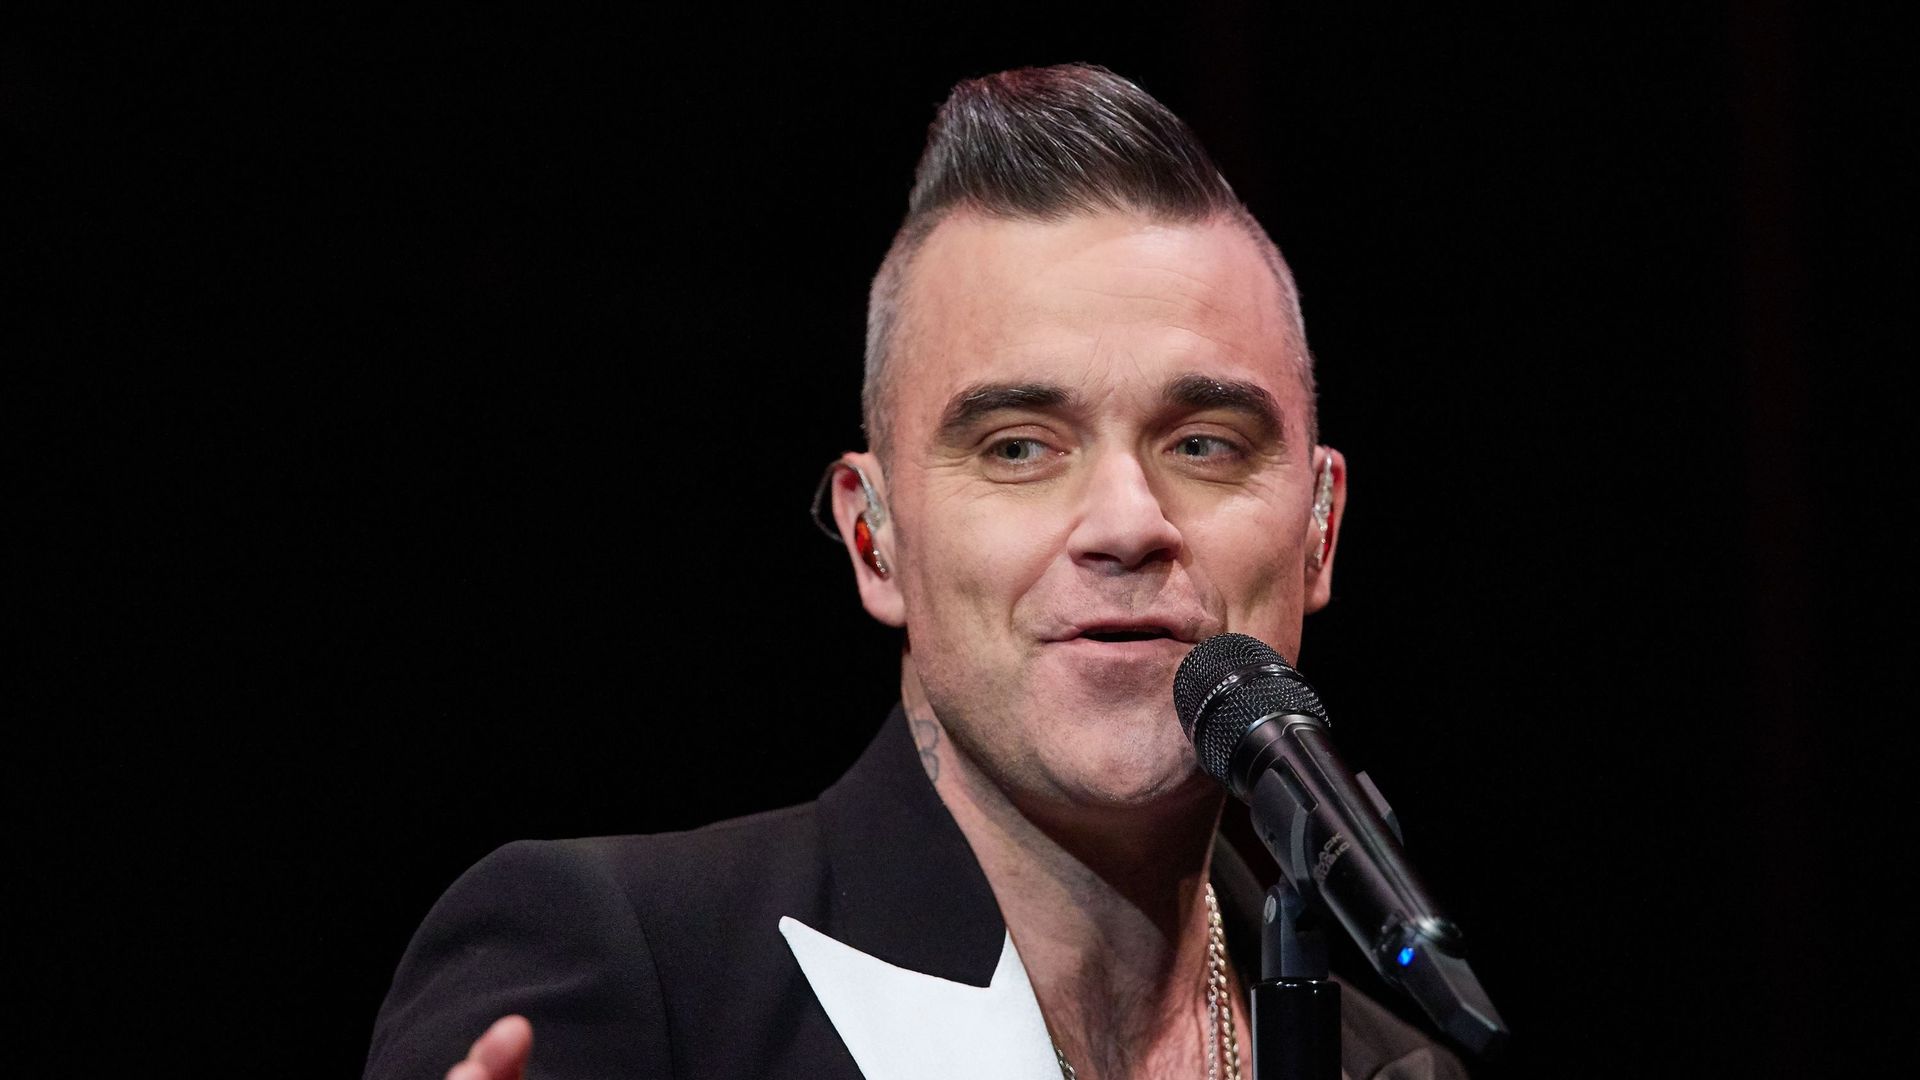 Le chanteur anglais Robbie Williams se produit sur scène lors d’un concert au Kehrwieder Theater.